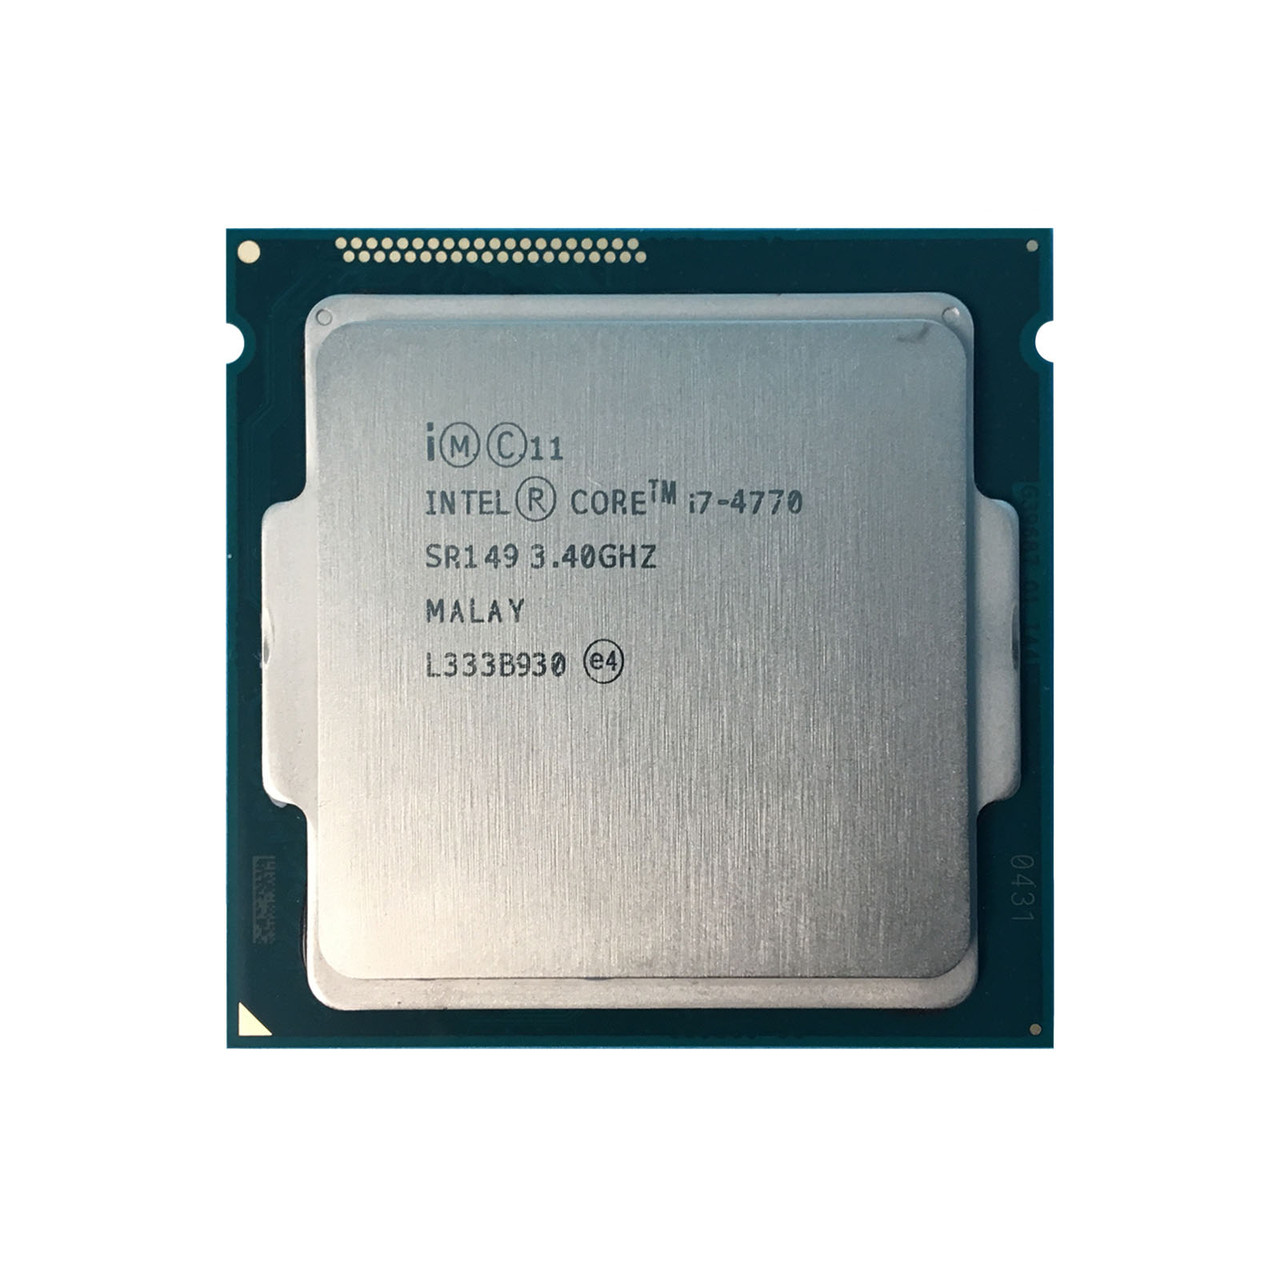 Intel SR149 | Intel i7-4770 QC 3.40Ghz Processor - Serverworlds